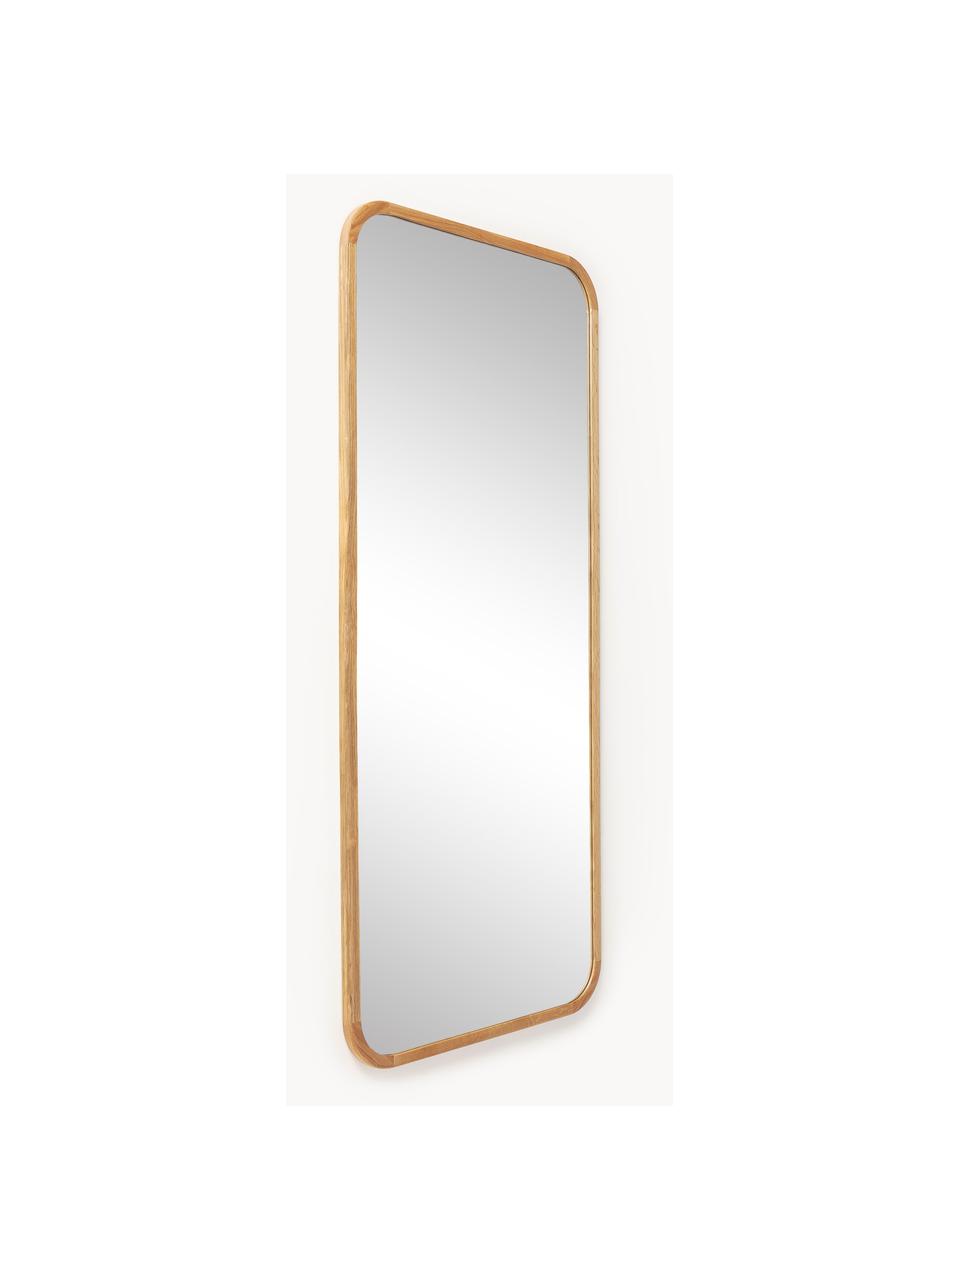 Velké naklápěcí zrcadlo s dubovým rámem Levan, Dubové dřevo, Š 80 cm, V 180 cm